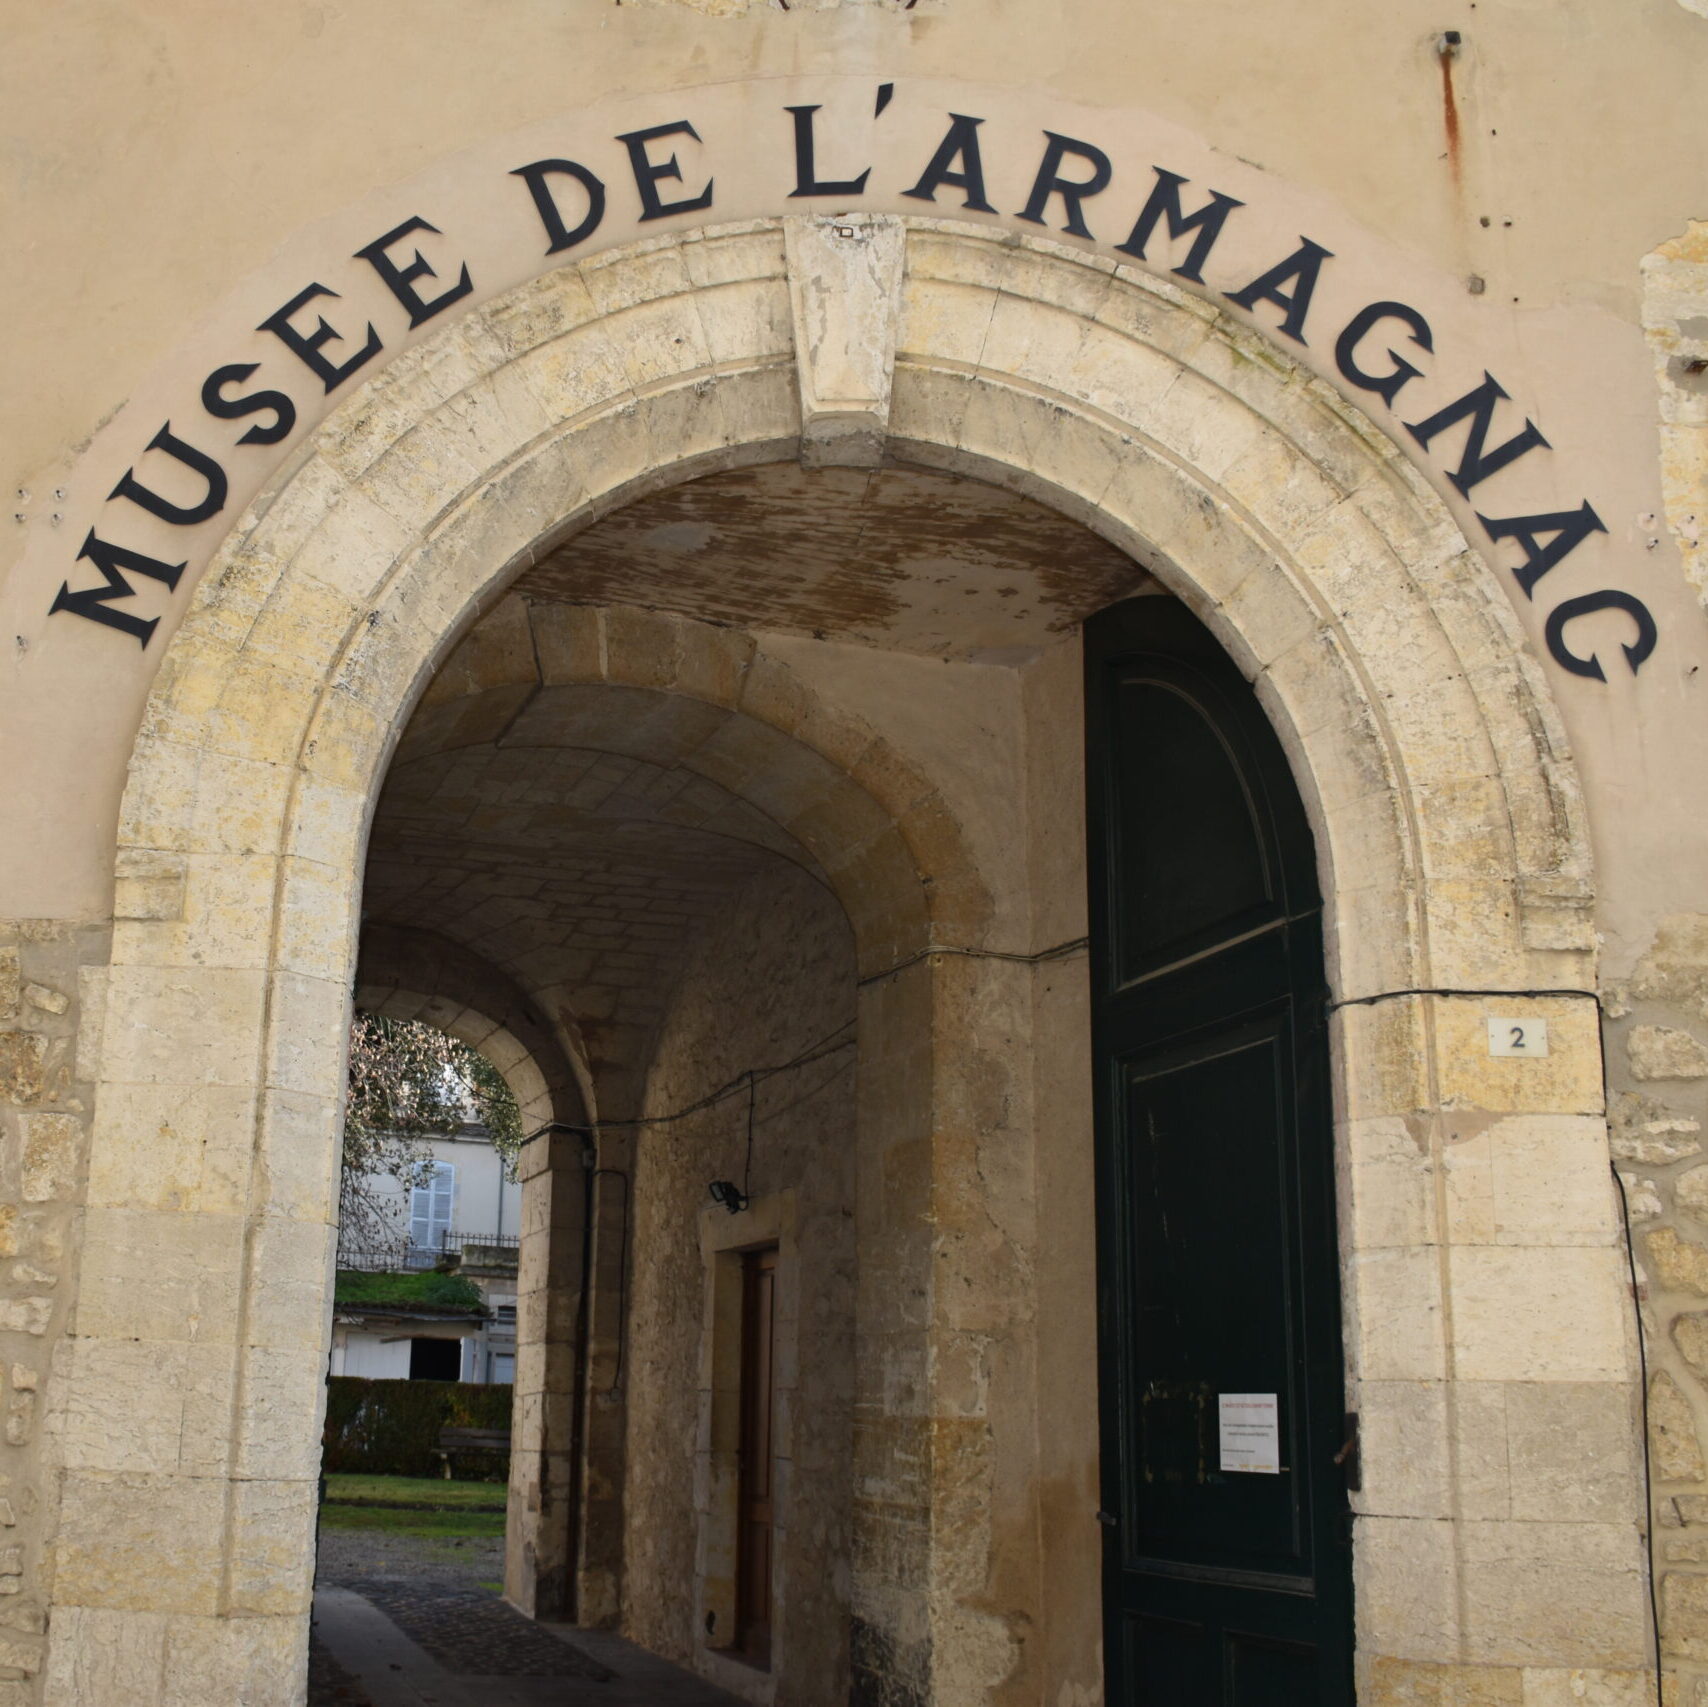 Musée de l'Armagnac